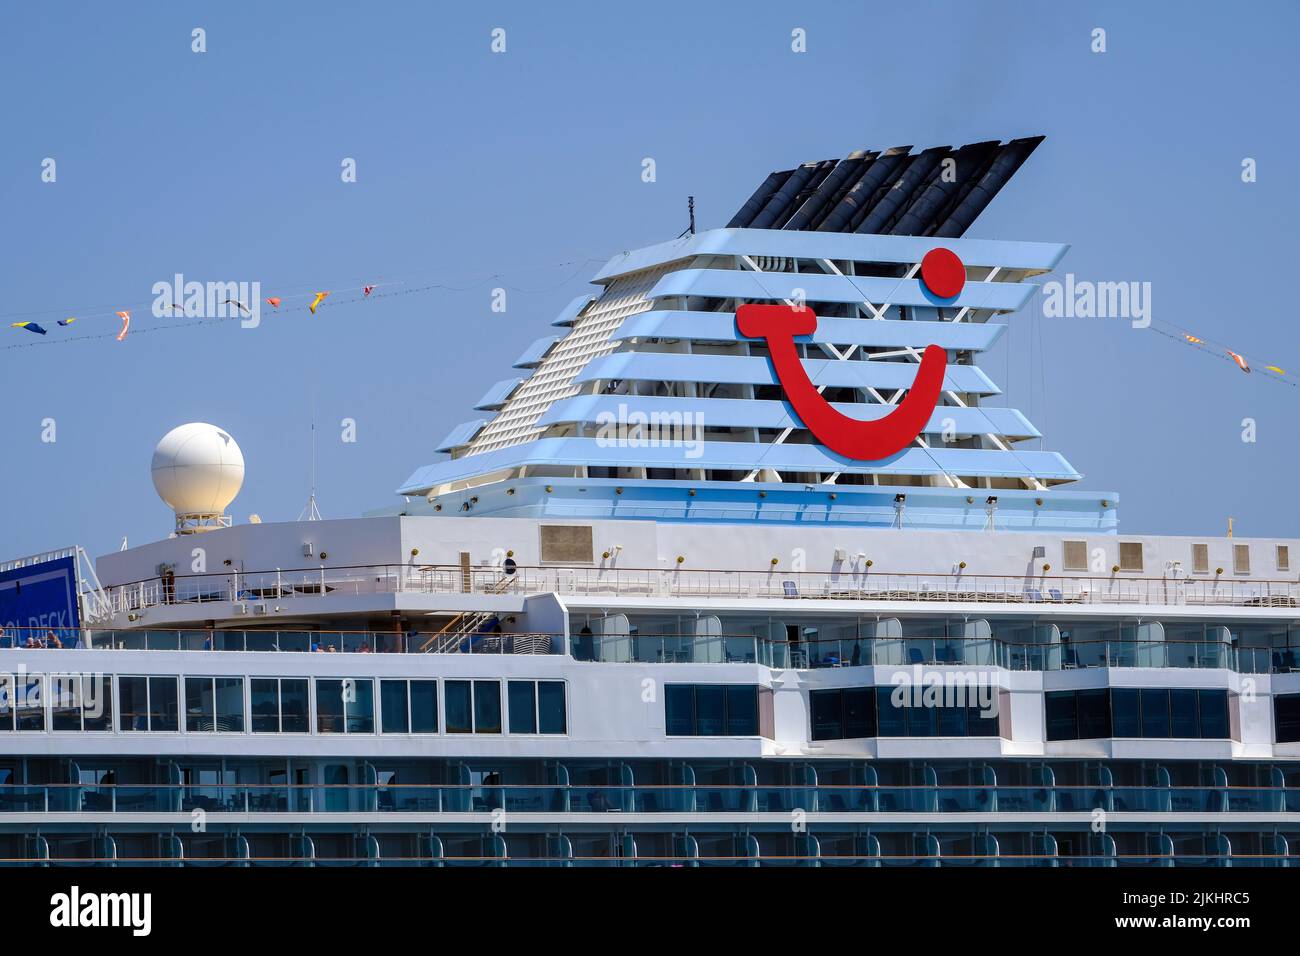 Korfu-Stadt, Korfu, Griechenland - das TUI-Kreuzschiff Marella Explorer liegt im Hafen von Korfu vor Anker. Das 262 Meter lange Schiff hat eine Masse von 9, 900 Tonnen. Stockfoto